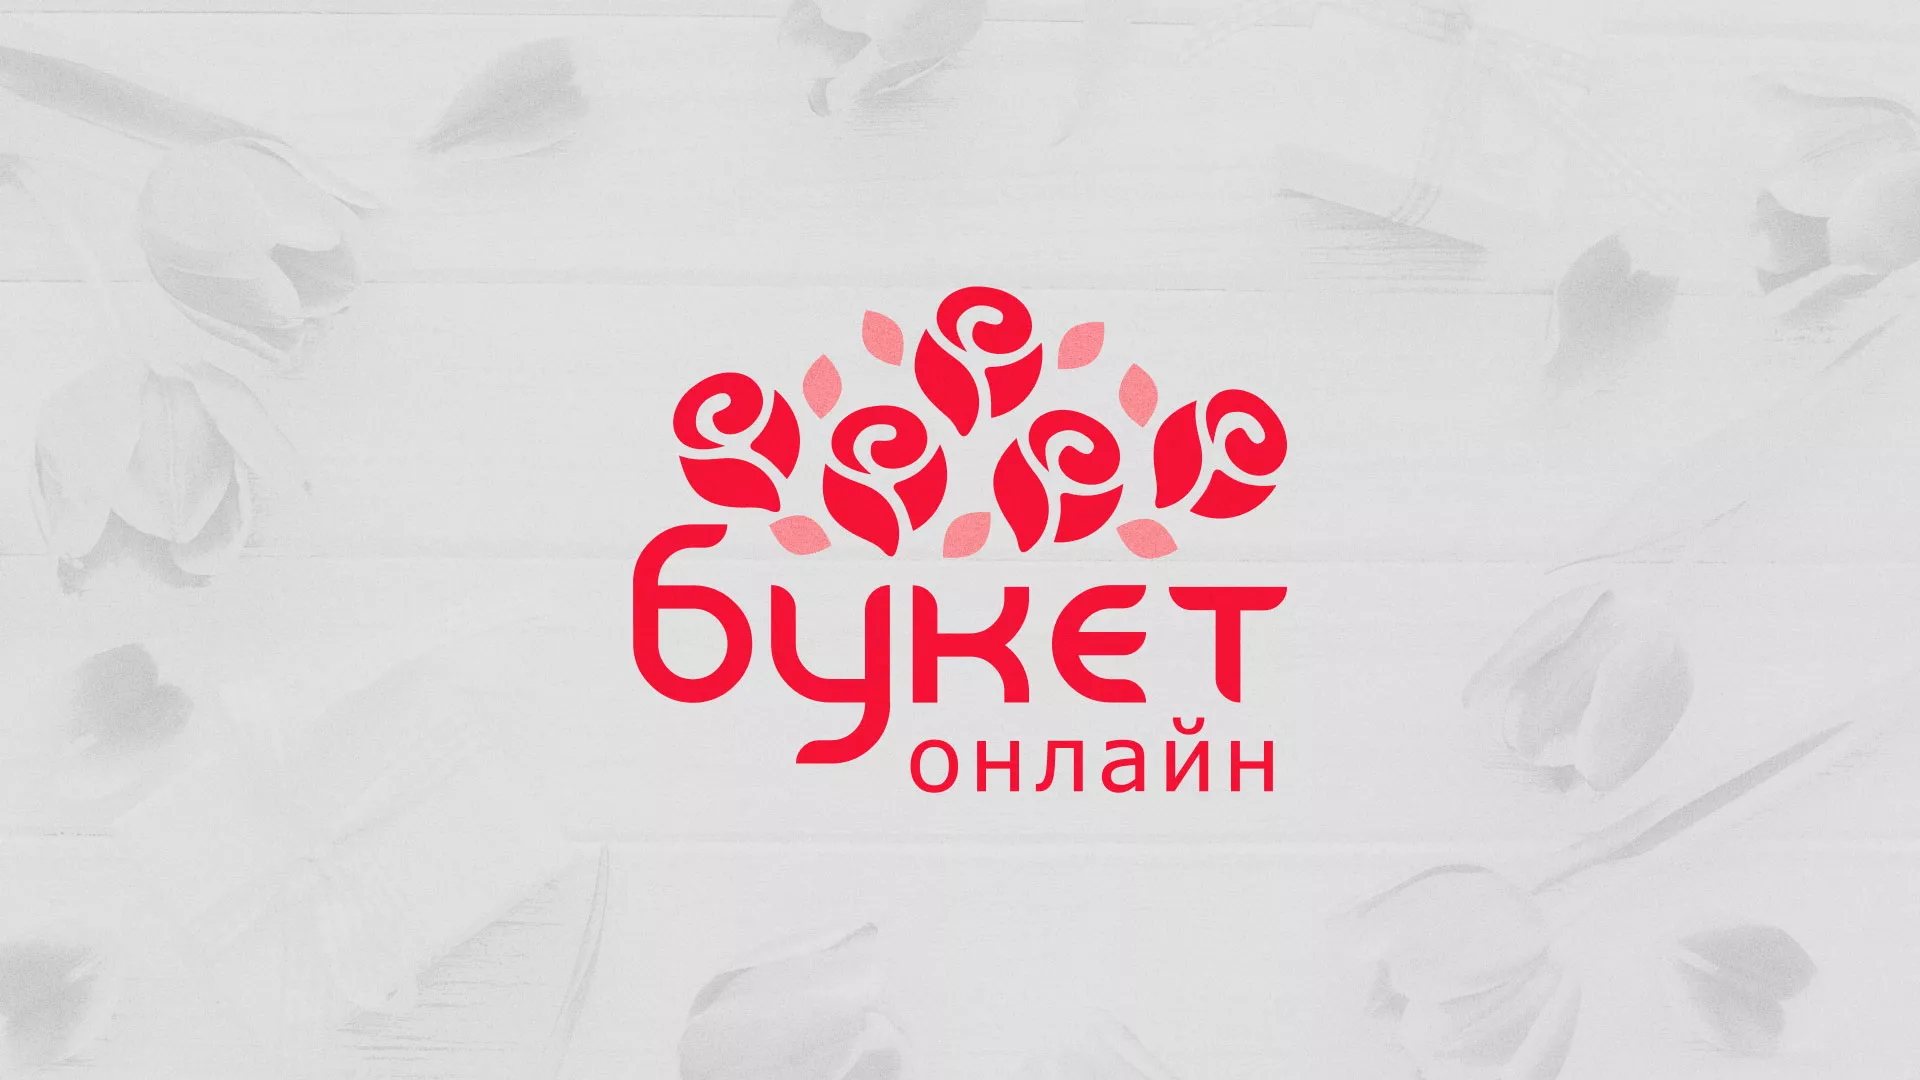 Создание интернет-магазина «Букет-онлайн» по цветам в Вилюйске